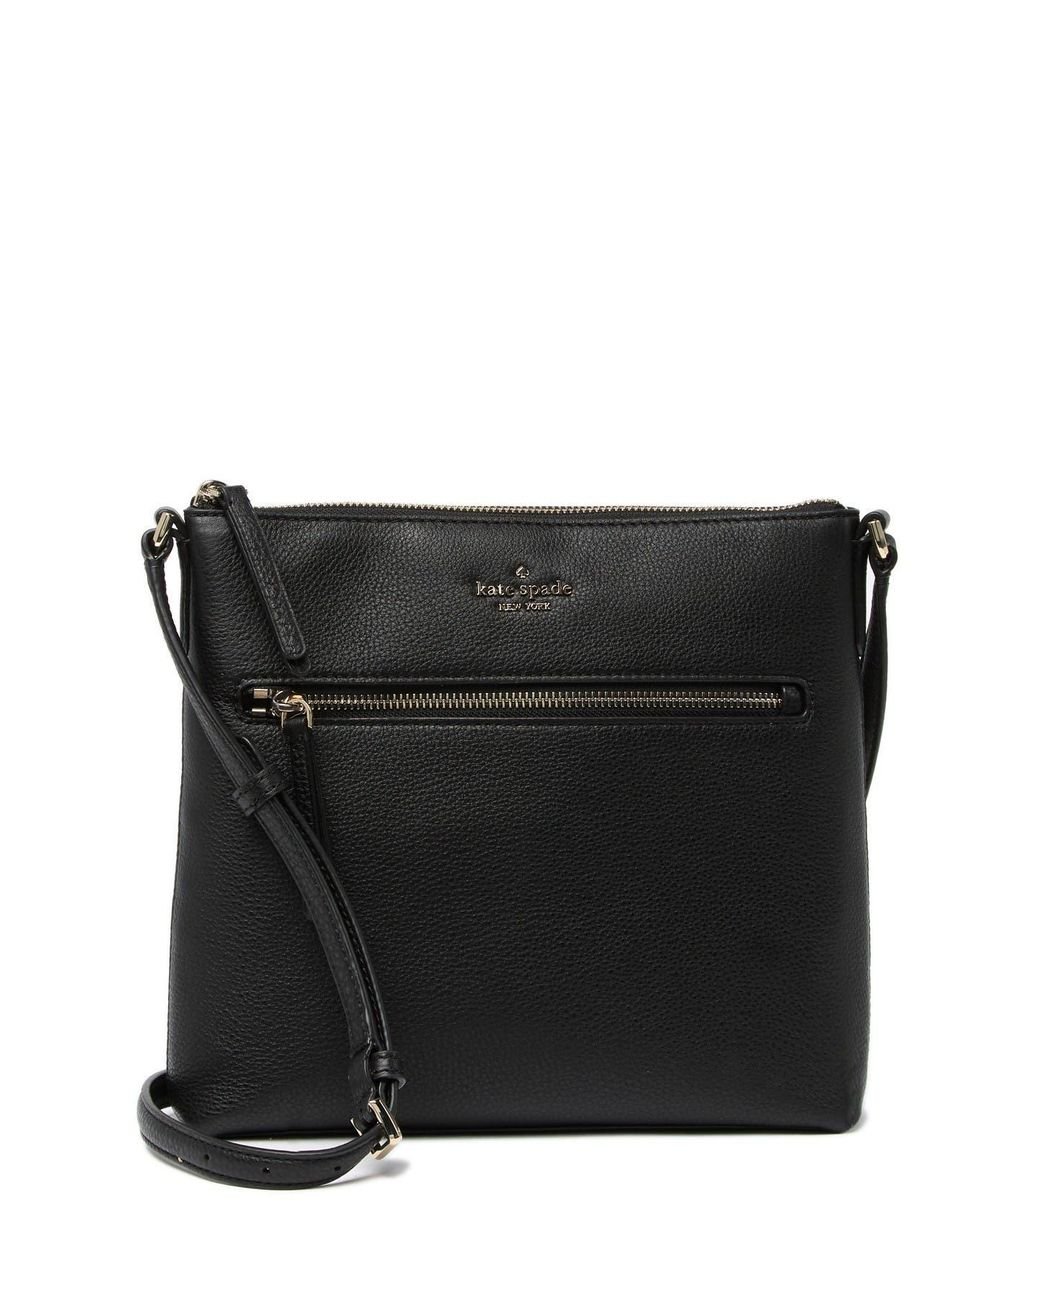 Kate Spade Jackson Top Zip Leather Crossbody Bag in Black | Lyst